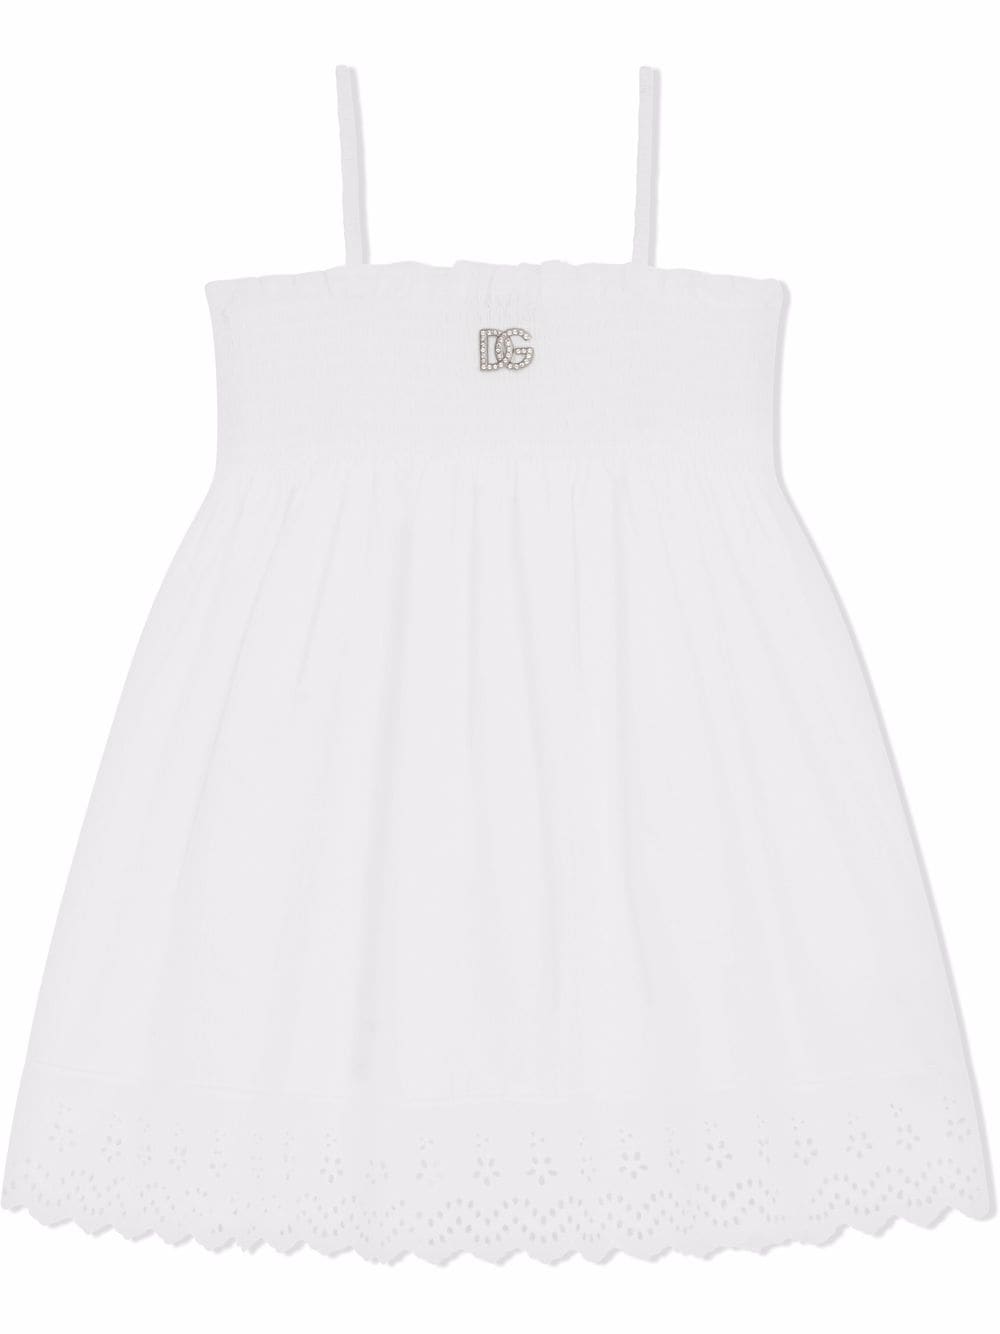 DOLCE & GABBANA KIDS Logo Dress White - MAISONDEFASHION.COM